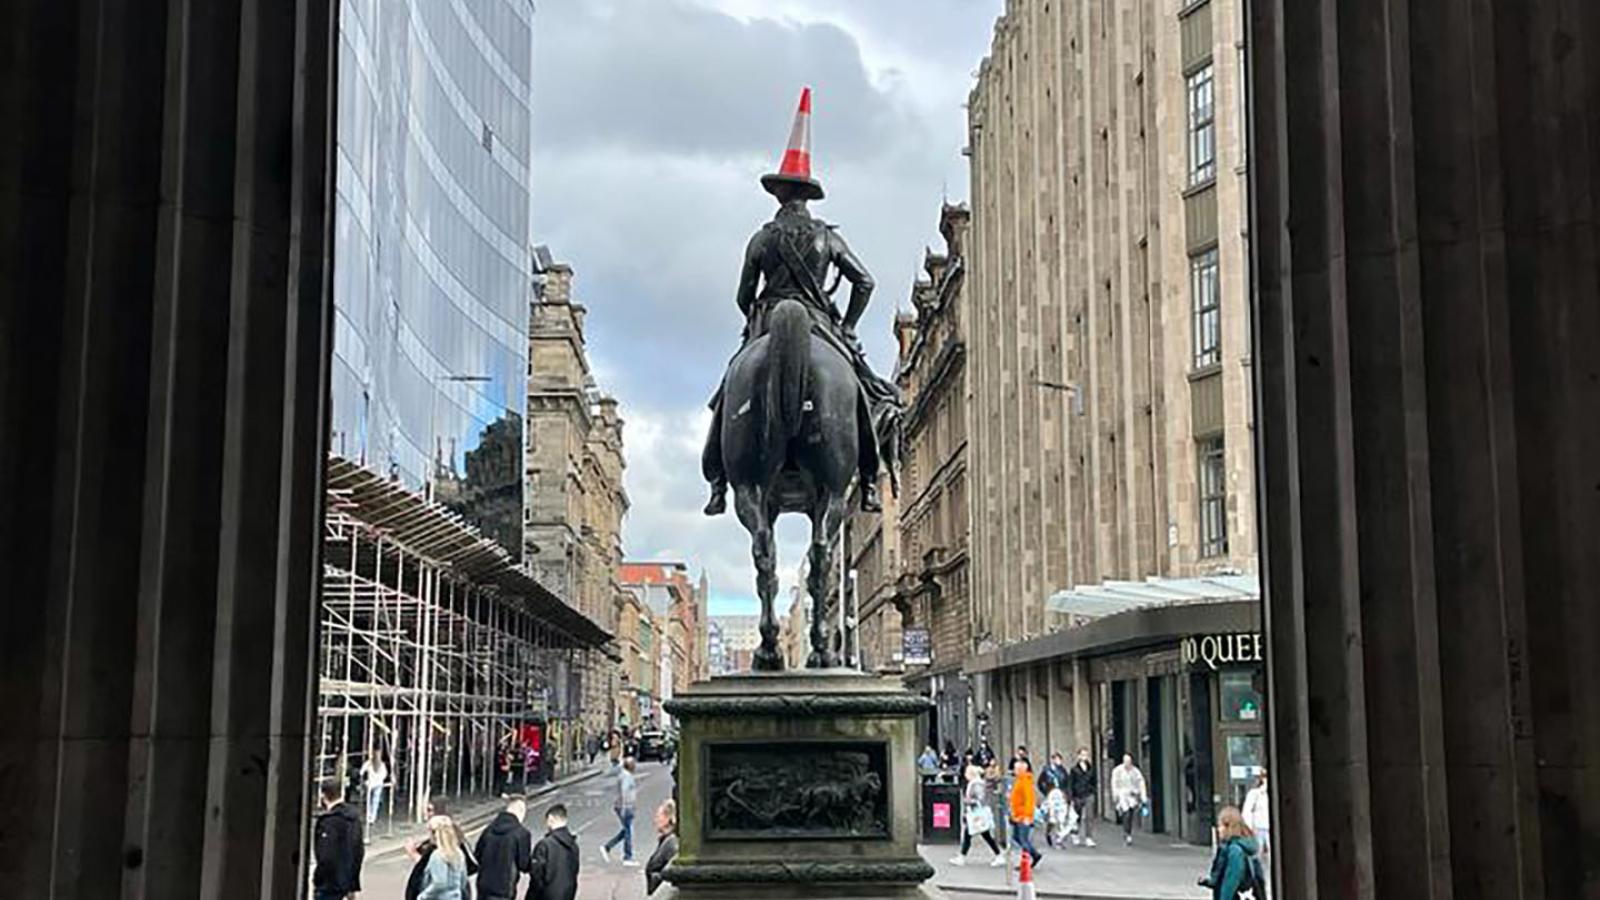 Der Blick führt aus dem Eingang des Gallery of Modern Art Glasgow heraus auf eine Statue auf einem Pferd die man von hinten sieht. Auf dem Kopf der Figur ist ein Verkehrskegel balanciert.